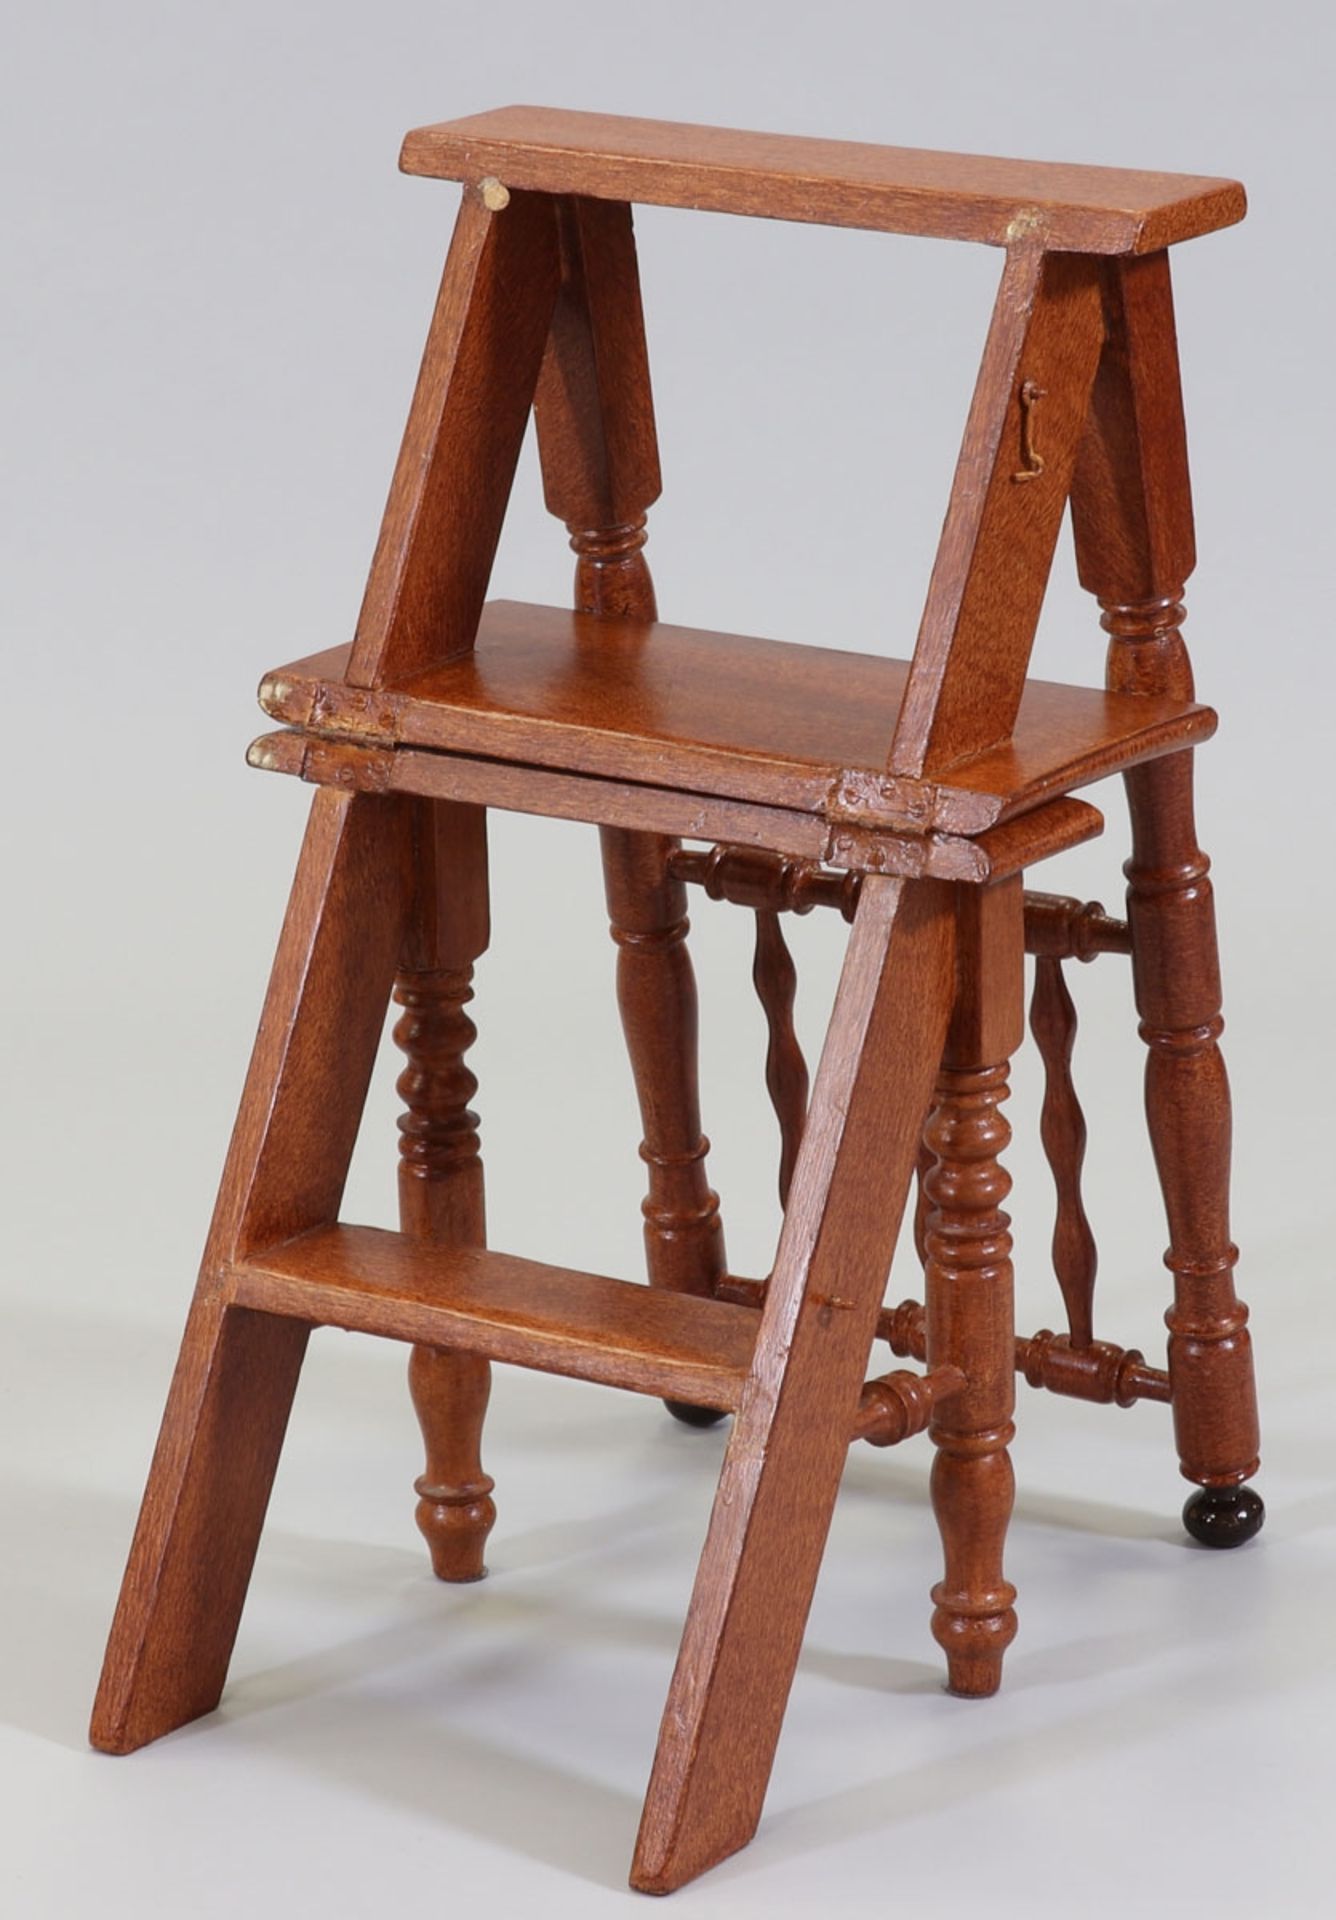 Bibliothekstreppe als StuhlUm 1870. Holz, gefasst. 50/100 x 46 x 40 cm. Leiter H. 80 cm. - Bild 2 aus 2